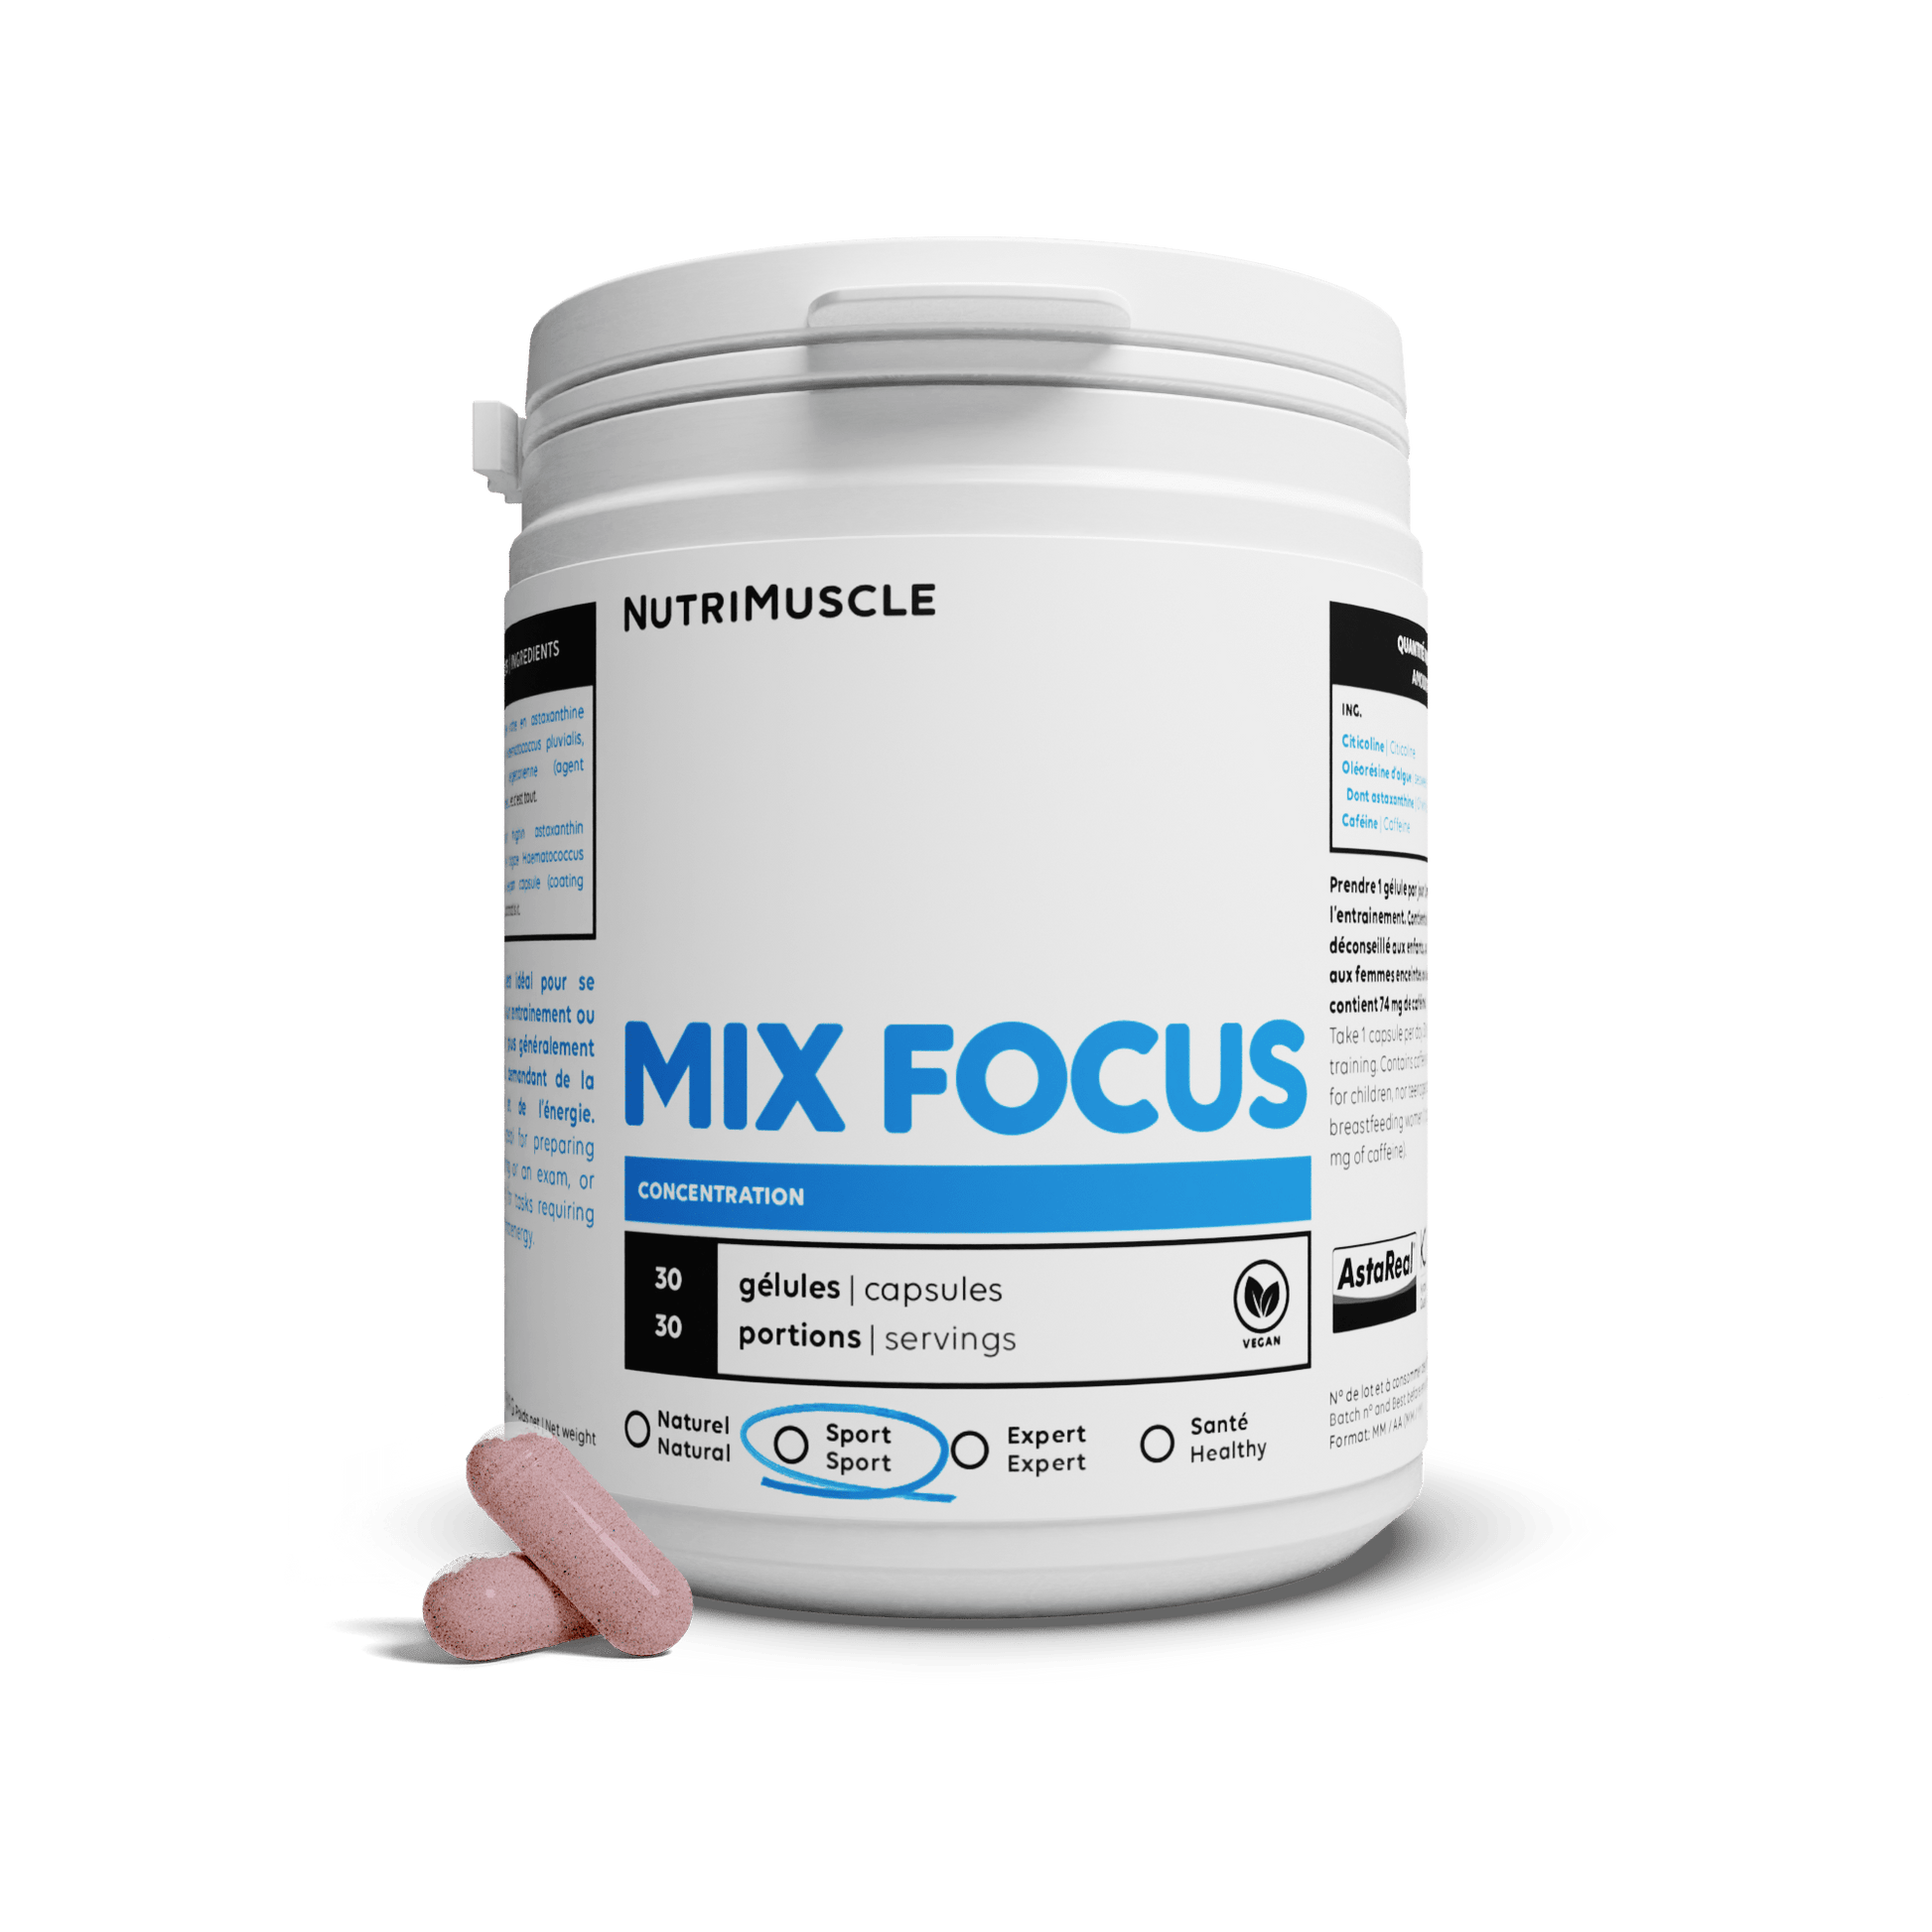 Nutrimuscle Nutriments 30 gélules Mix Focus